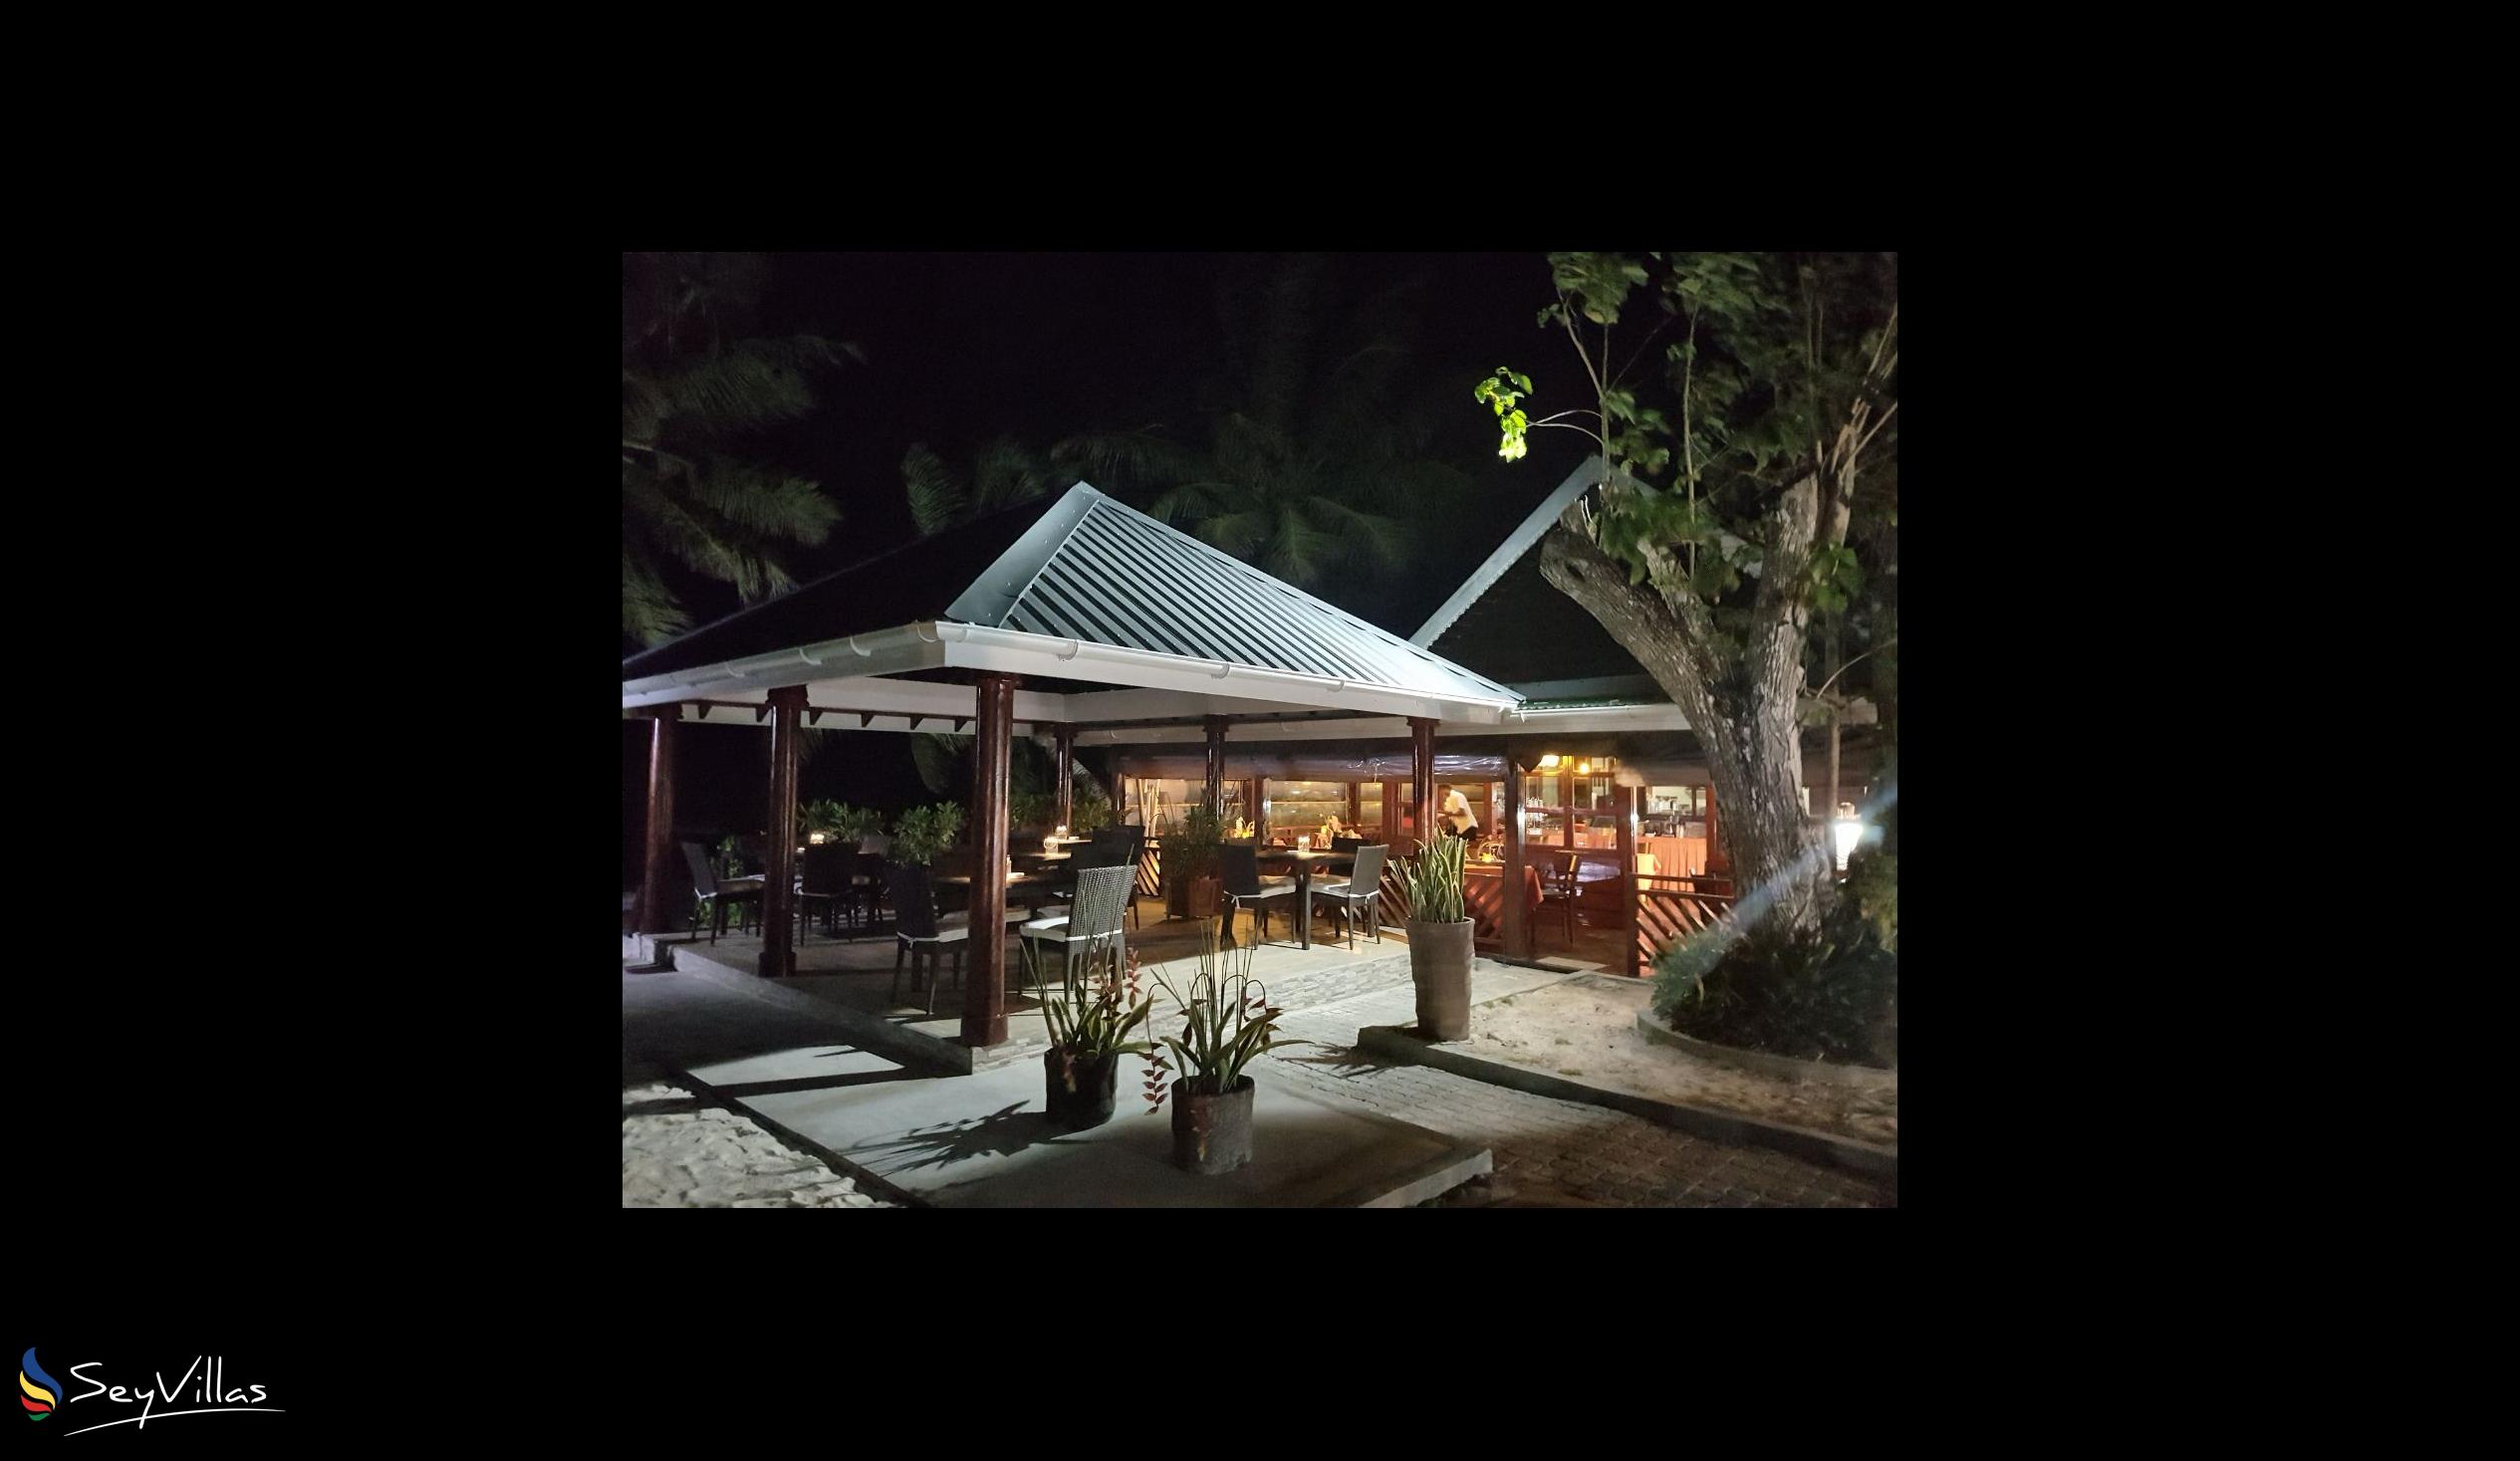 Photo 9: Villas de Mer - Outdoor area - Praslin (Seychelles)